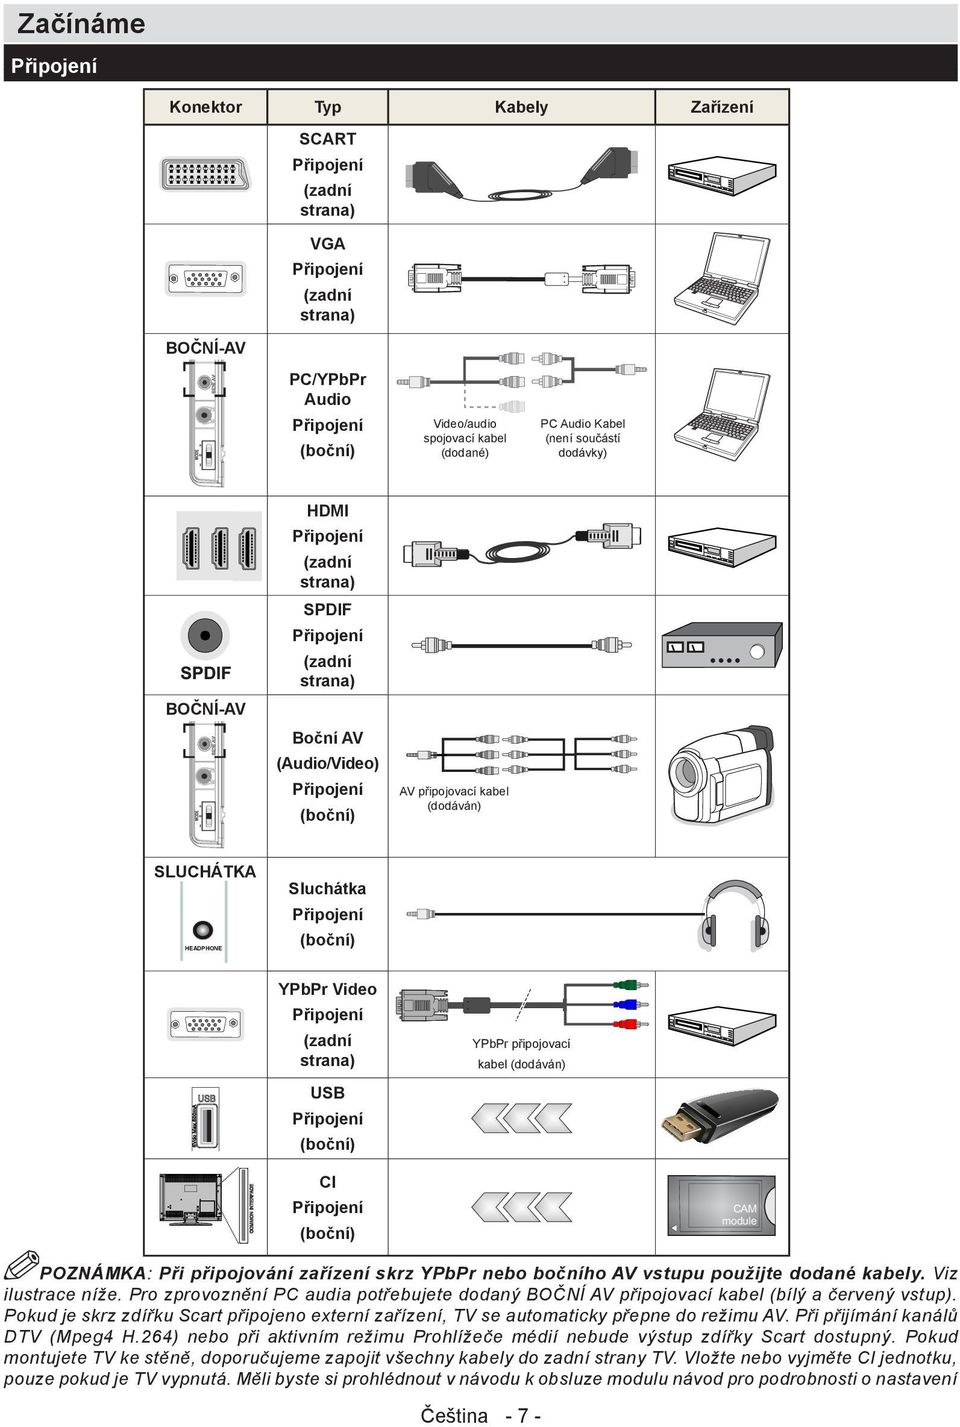 Sluchátka Připojení (boční) YPbPr Video Připojení (zadní strana) USB Připojení (boční) YPbPr připojovací kabel (dodáván) CI Připojení (boční) POZNÁMKA: Při připojování zařízení skrz YPbPr nebo